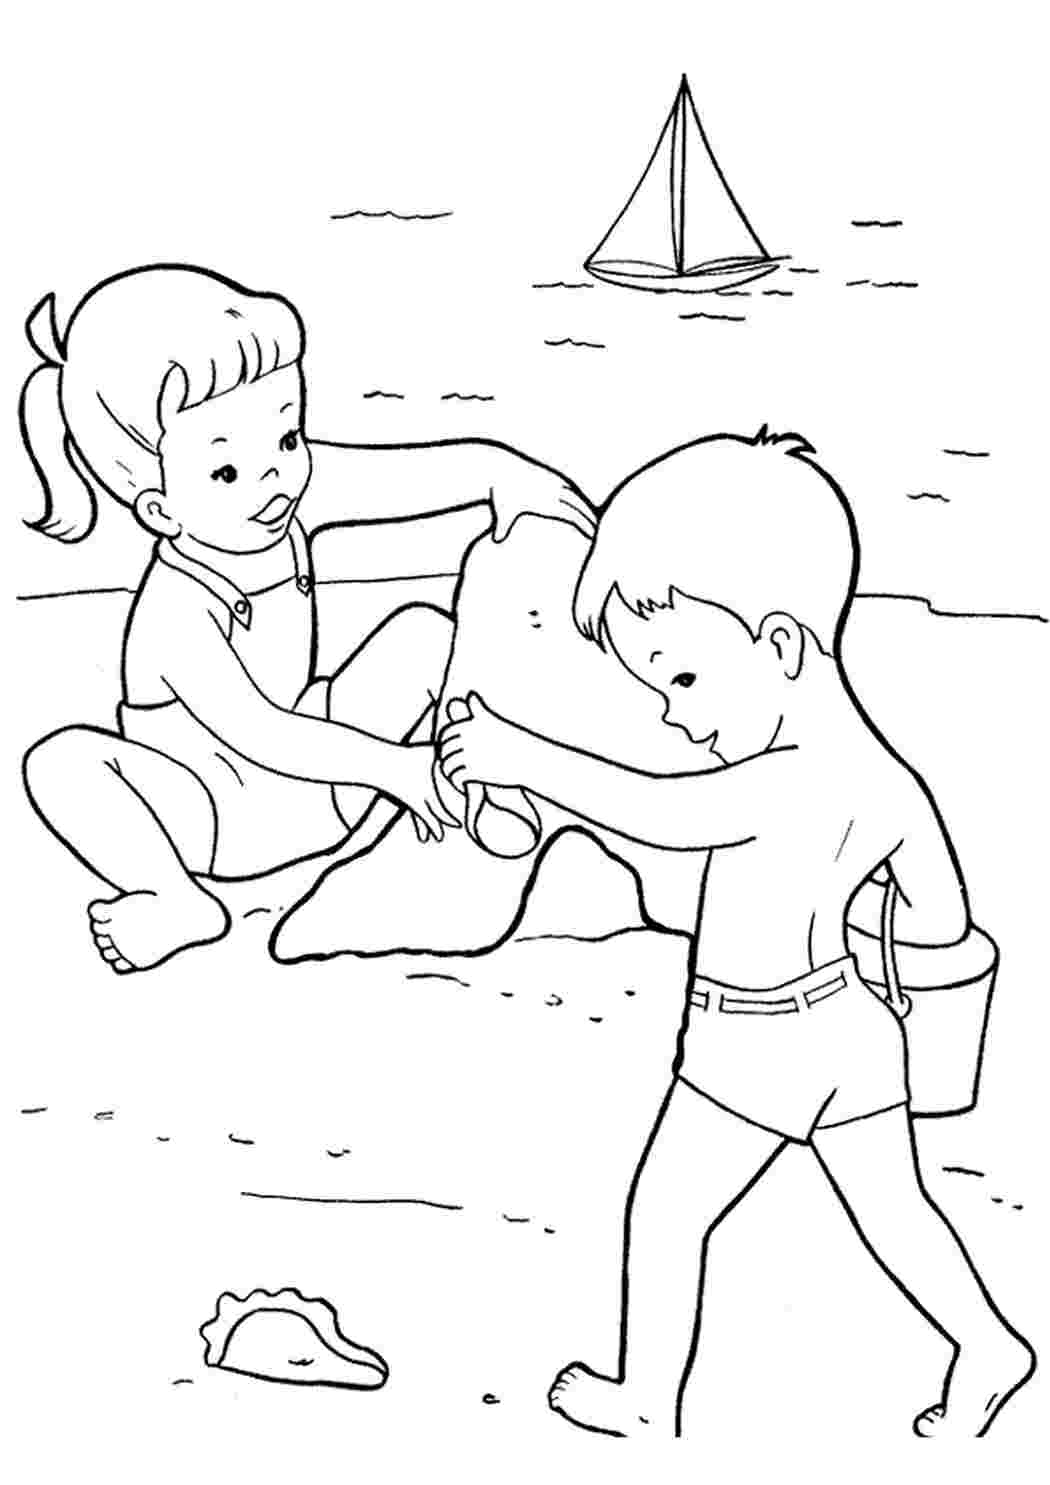 Игра Рисовалка на песке